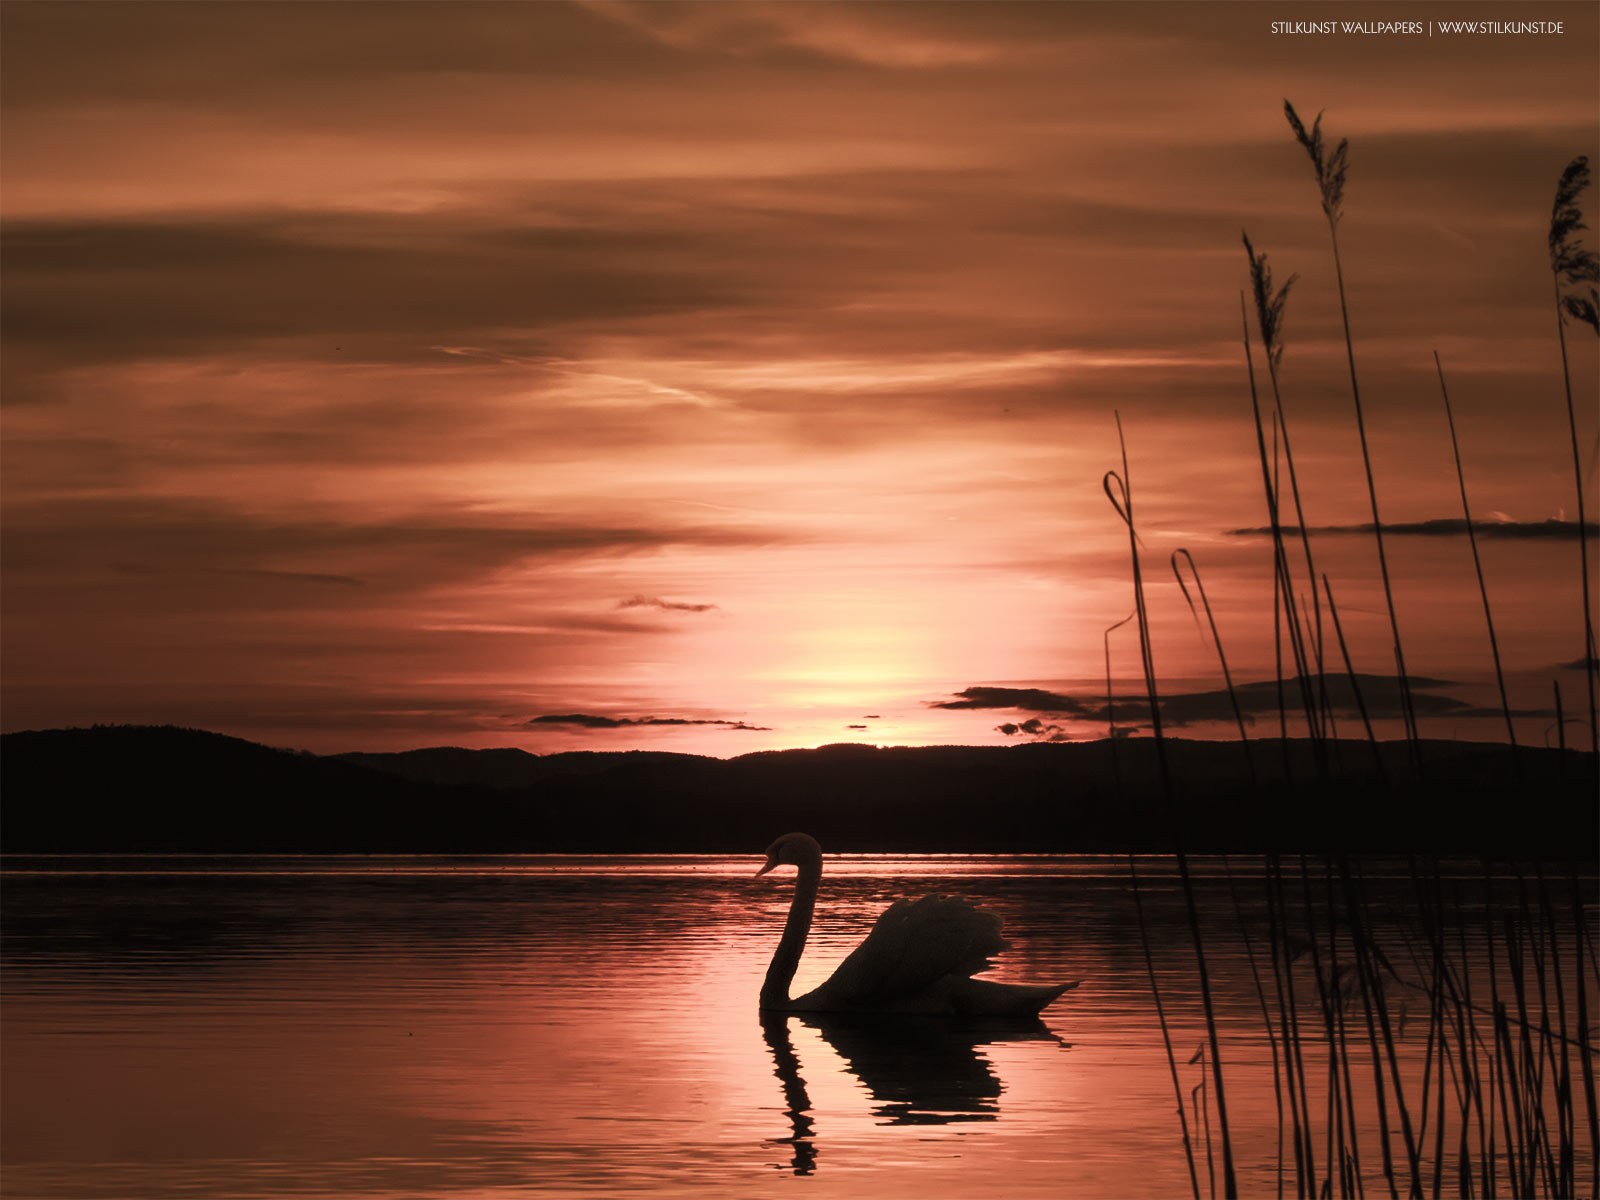 Sonnenuntergang | 1600 x 1200px | Bild: ©by Sabrina | Reiner | www.stilkunst.de | Lizenz: CC BY-SA